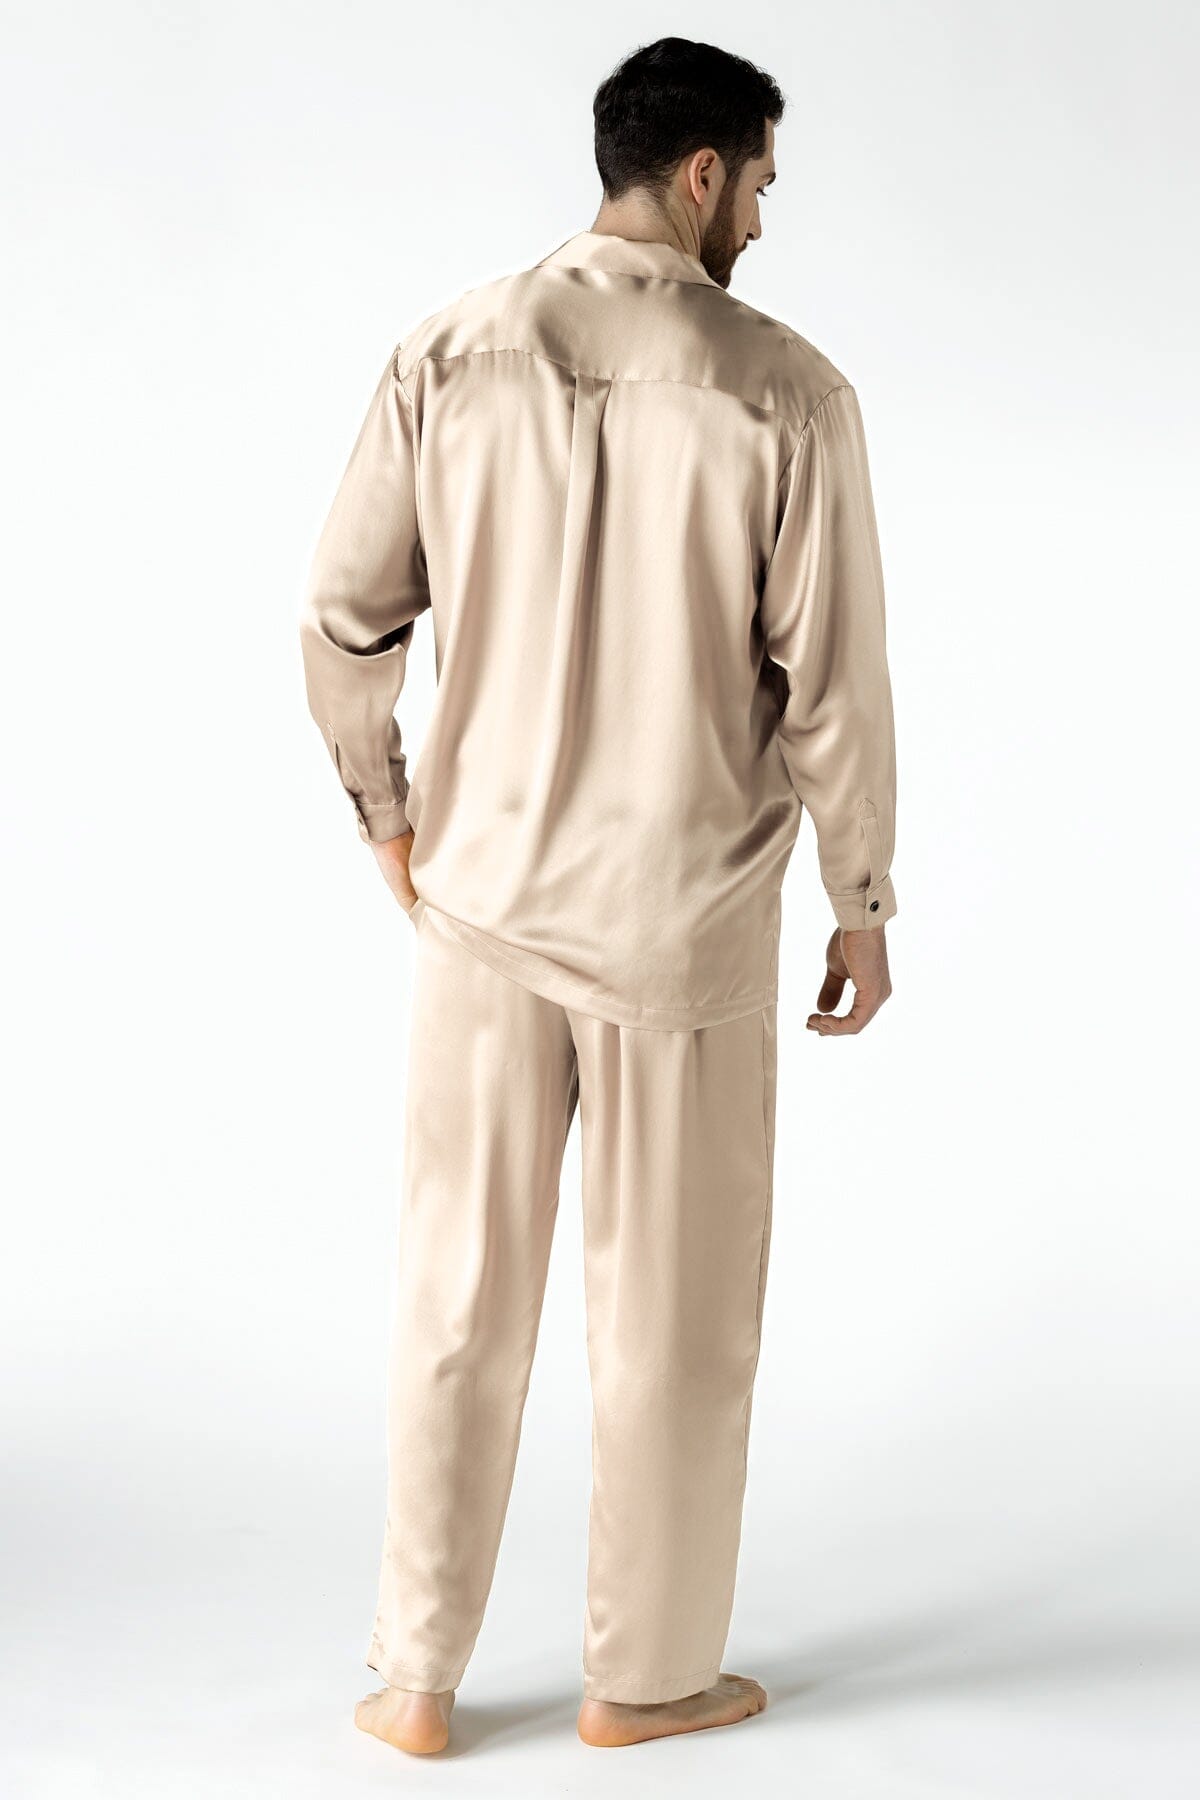 NK Men 3/4 Robe - Short Silk Robe for Men